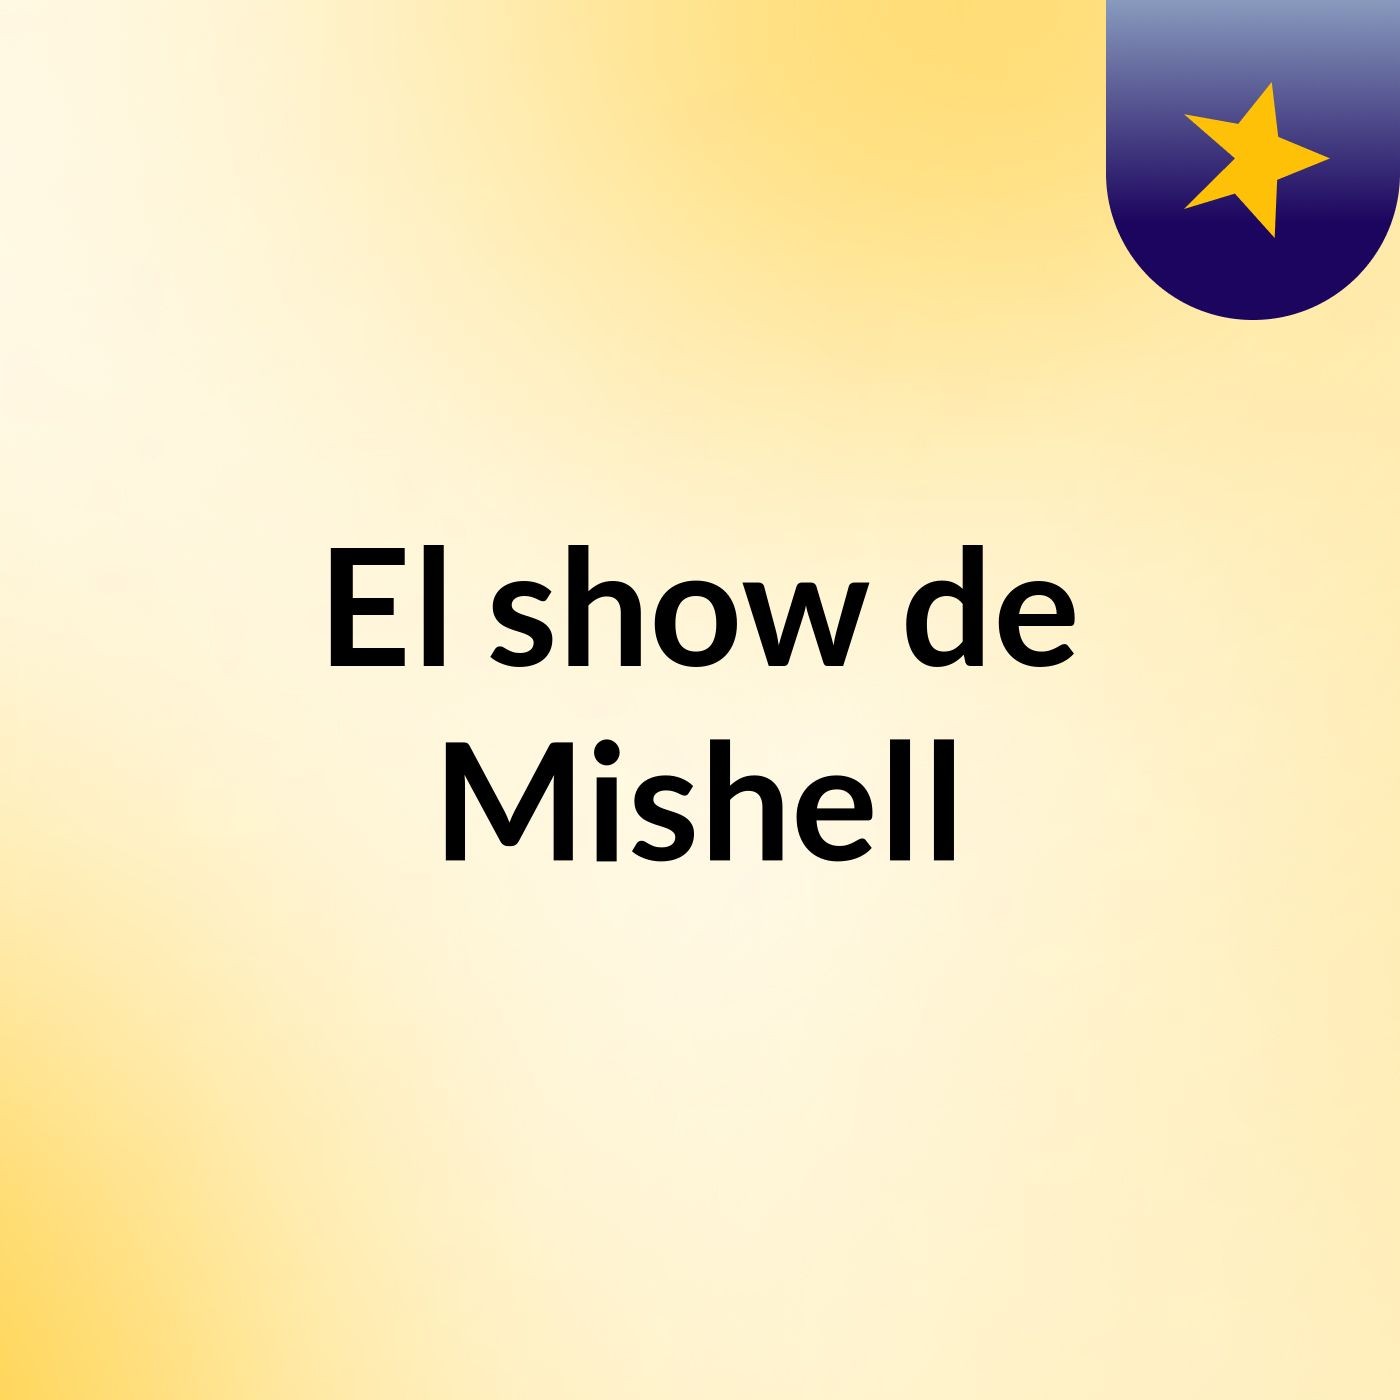 El show de Mishell